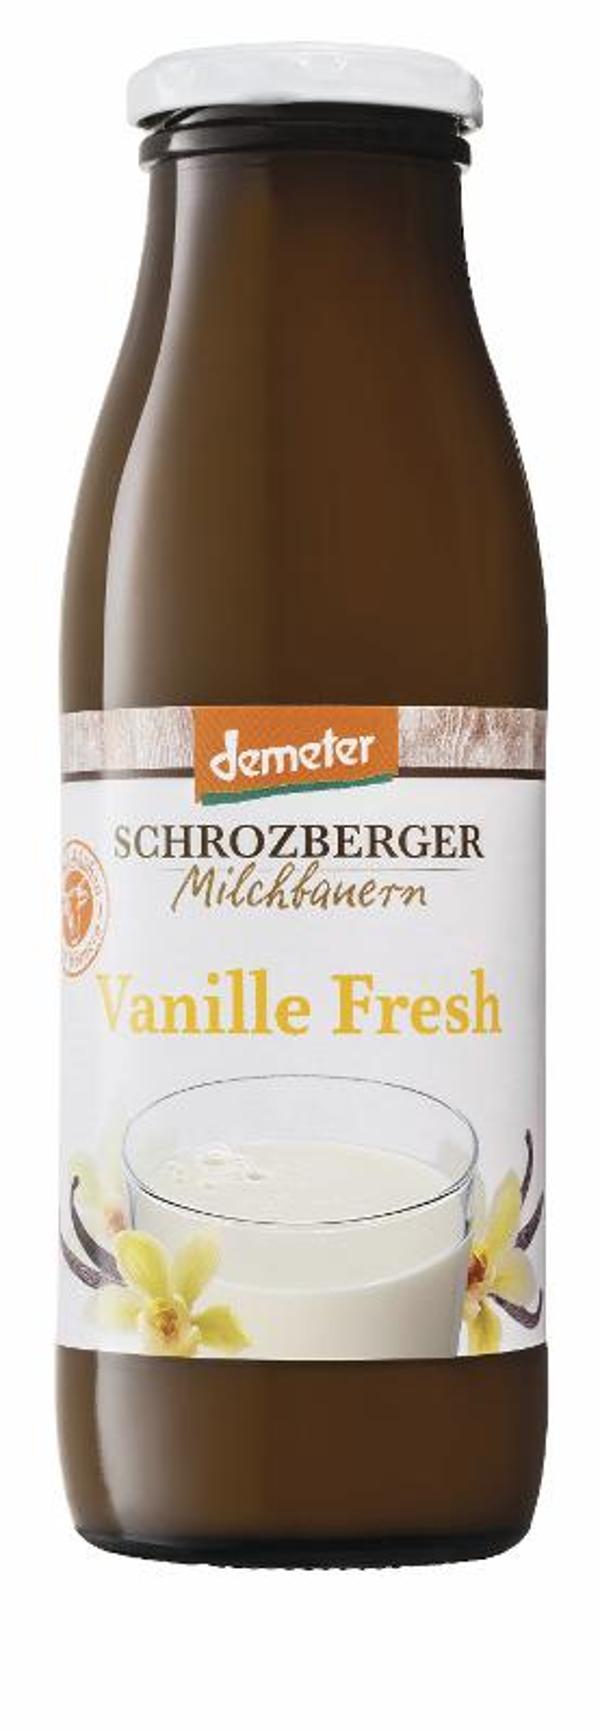 Produktfoto zu VPE Sauermilch Vanille fresh 6x0,5 l Schrozberger Milchbauern